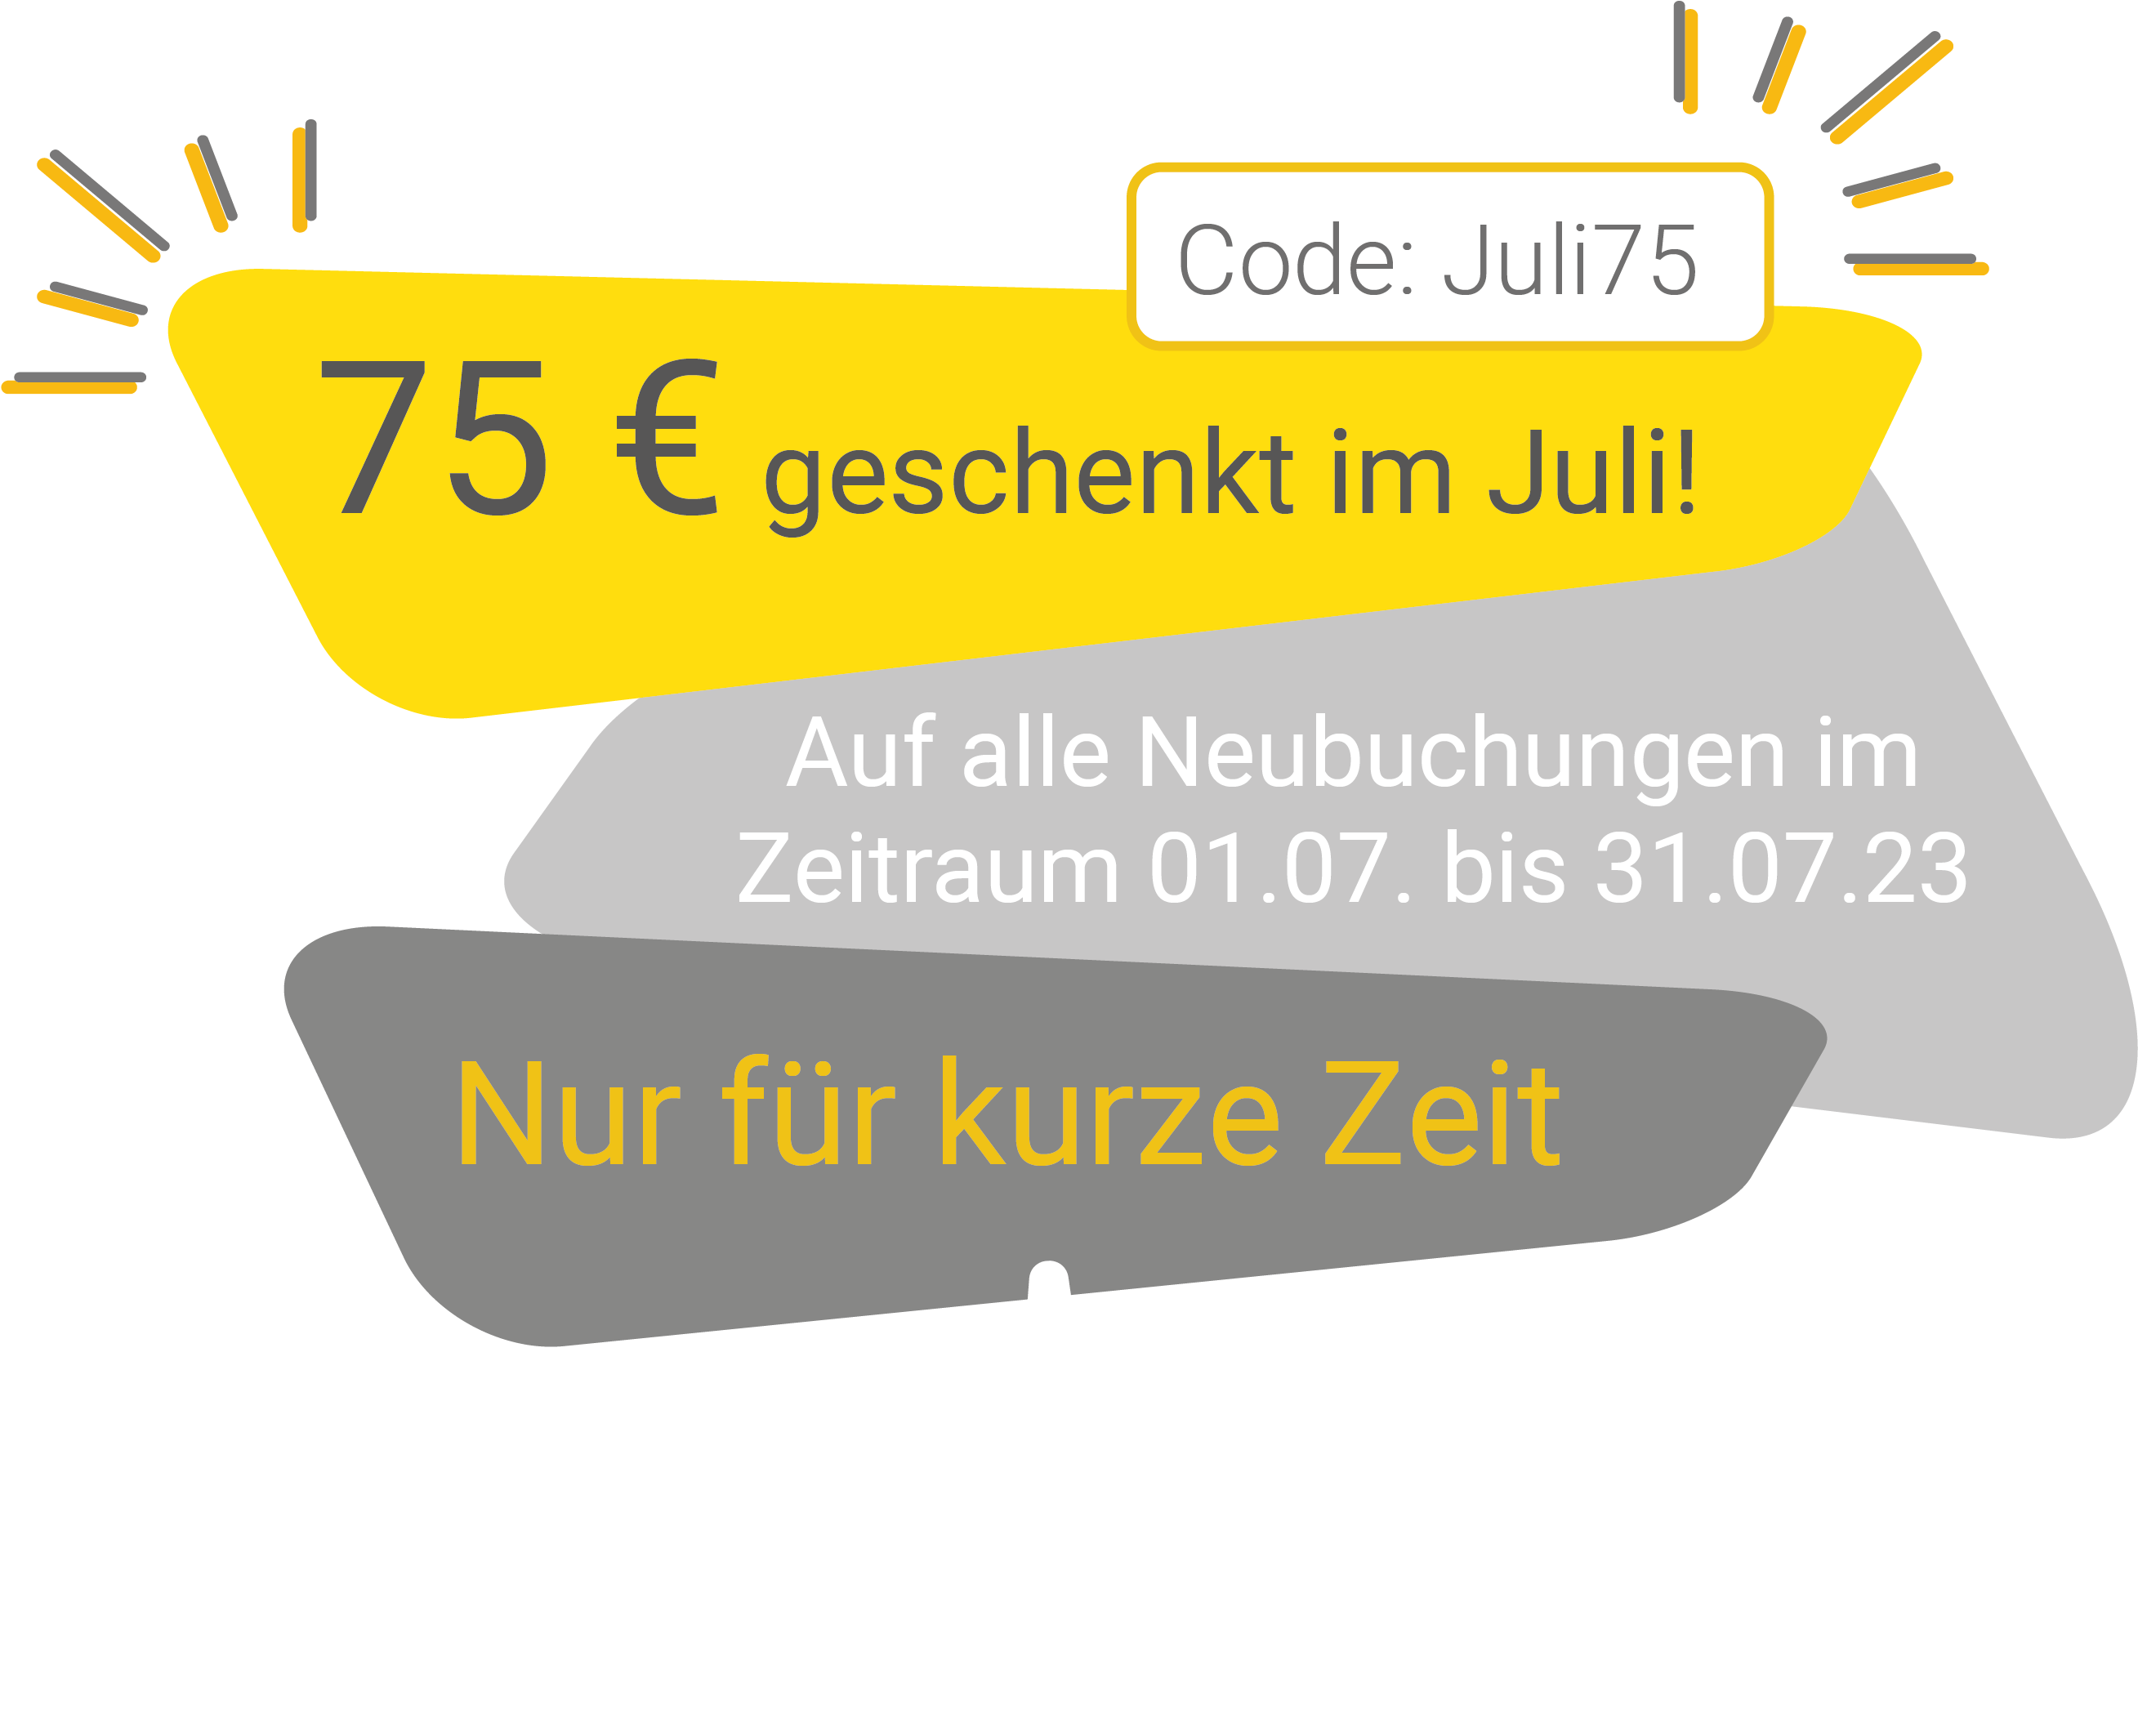 Grafik Rabattaktion Juli: 75 € geschenkt mit Code "Juli75"